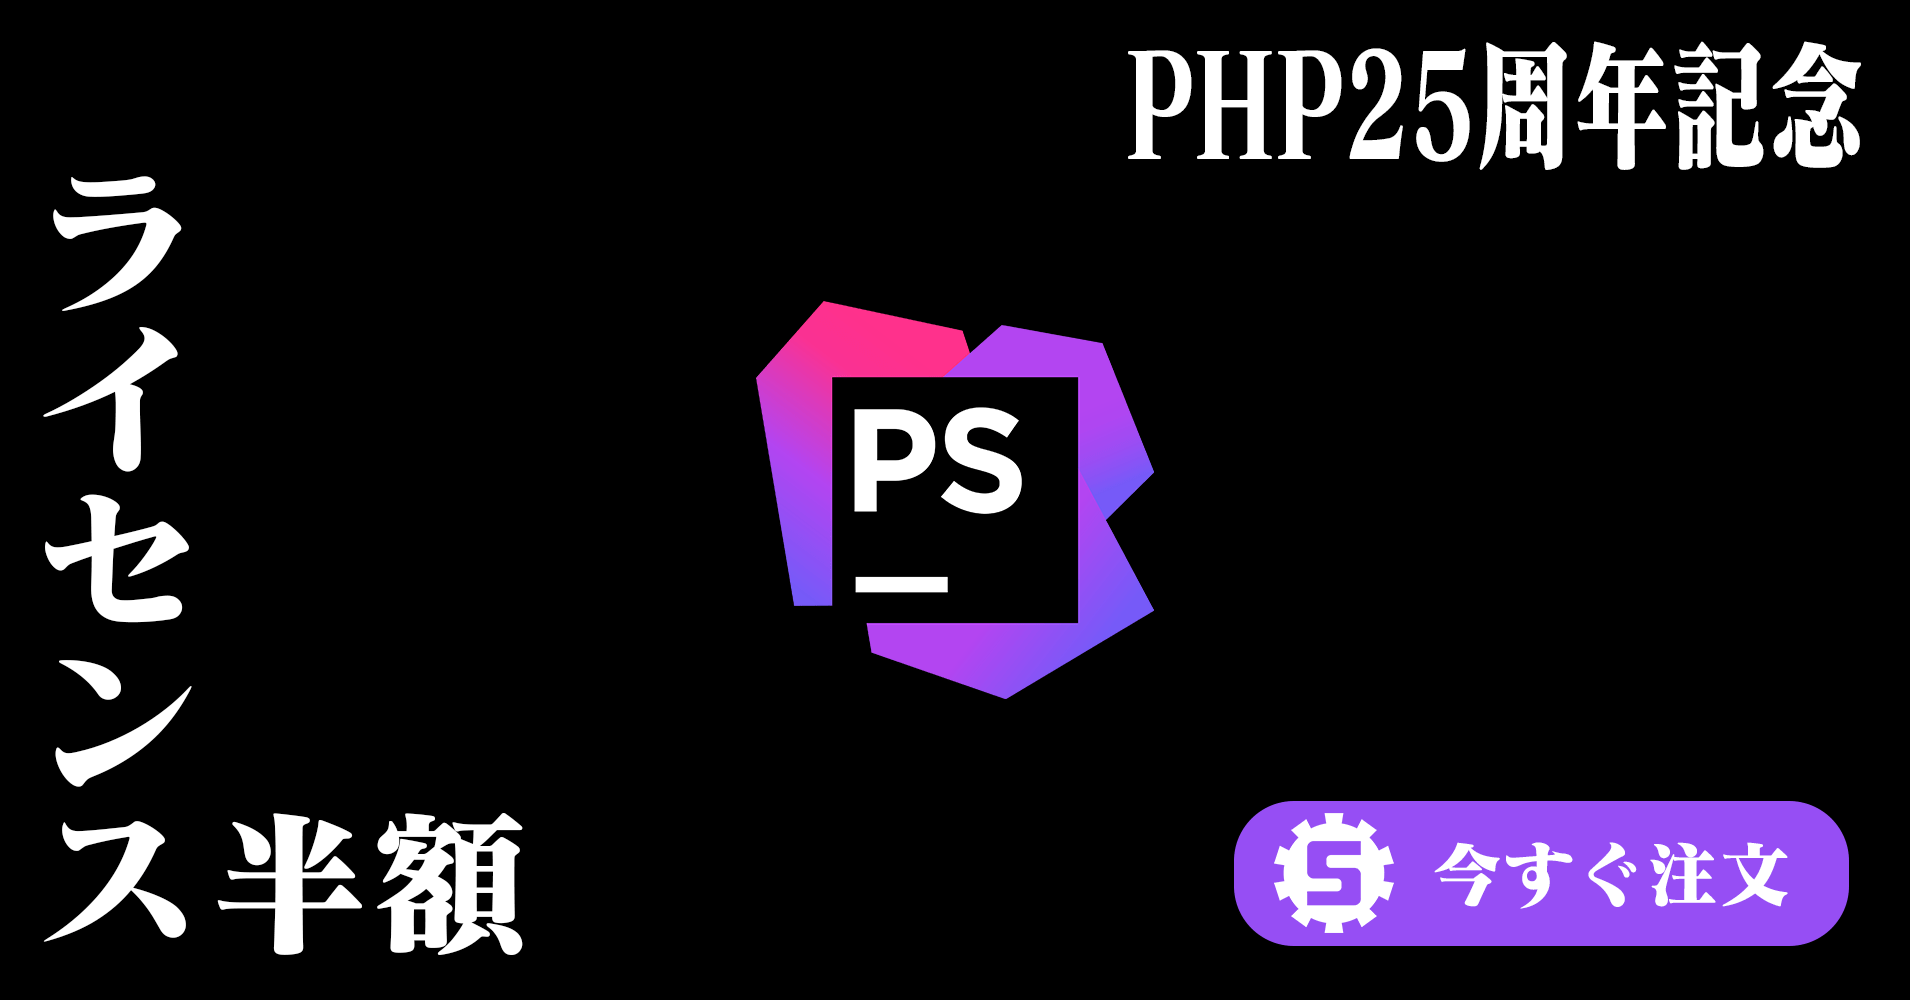 【2020年6月10日23時まで】PHP25周年記念 – PhpStorm が期間限定で半額に！ #ILOVEPHP #PHP25